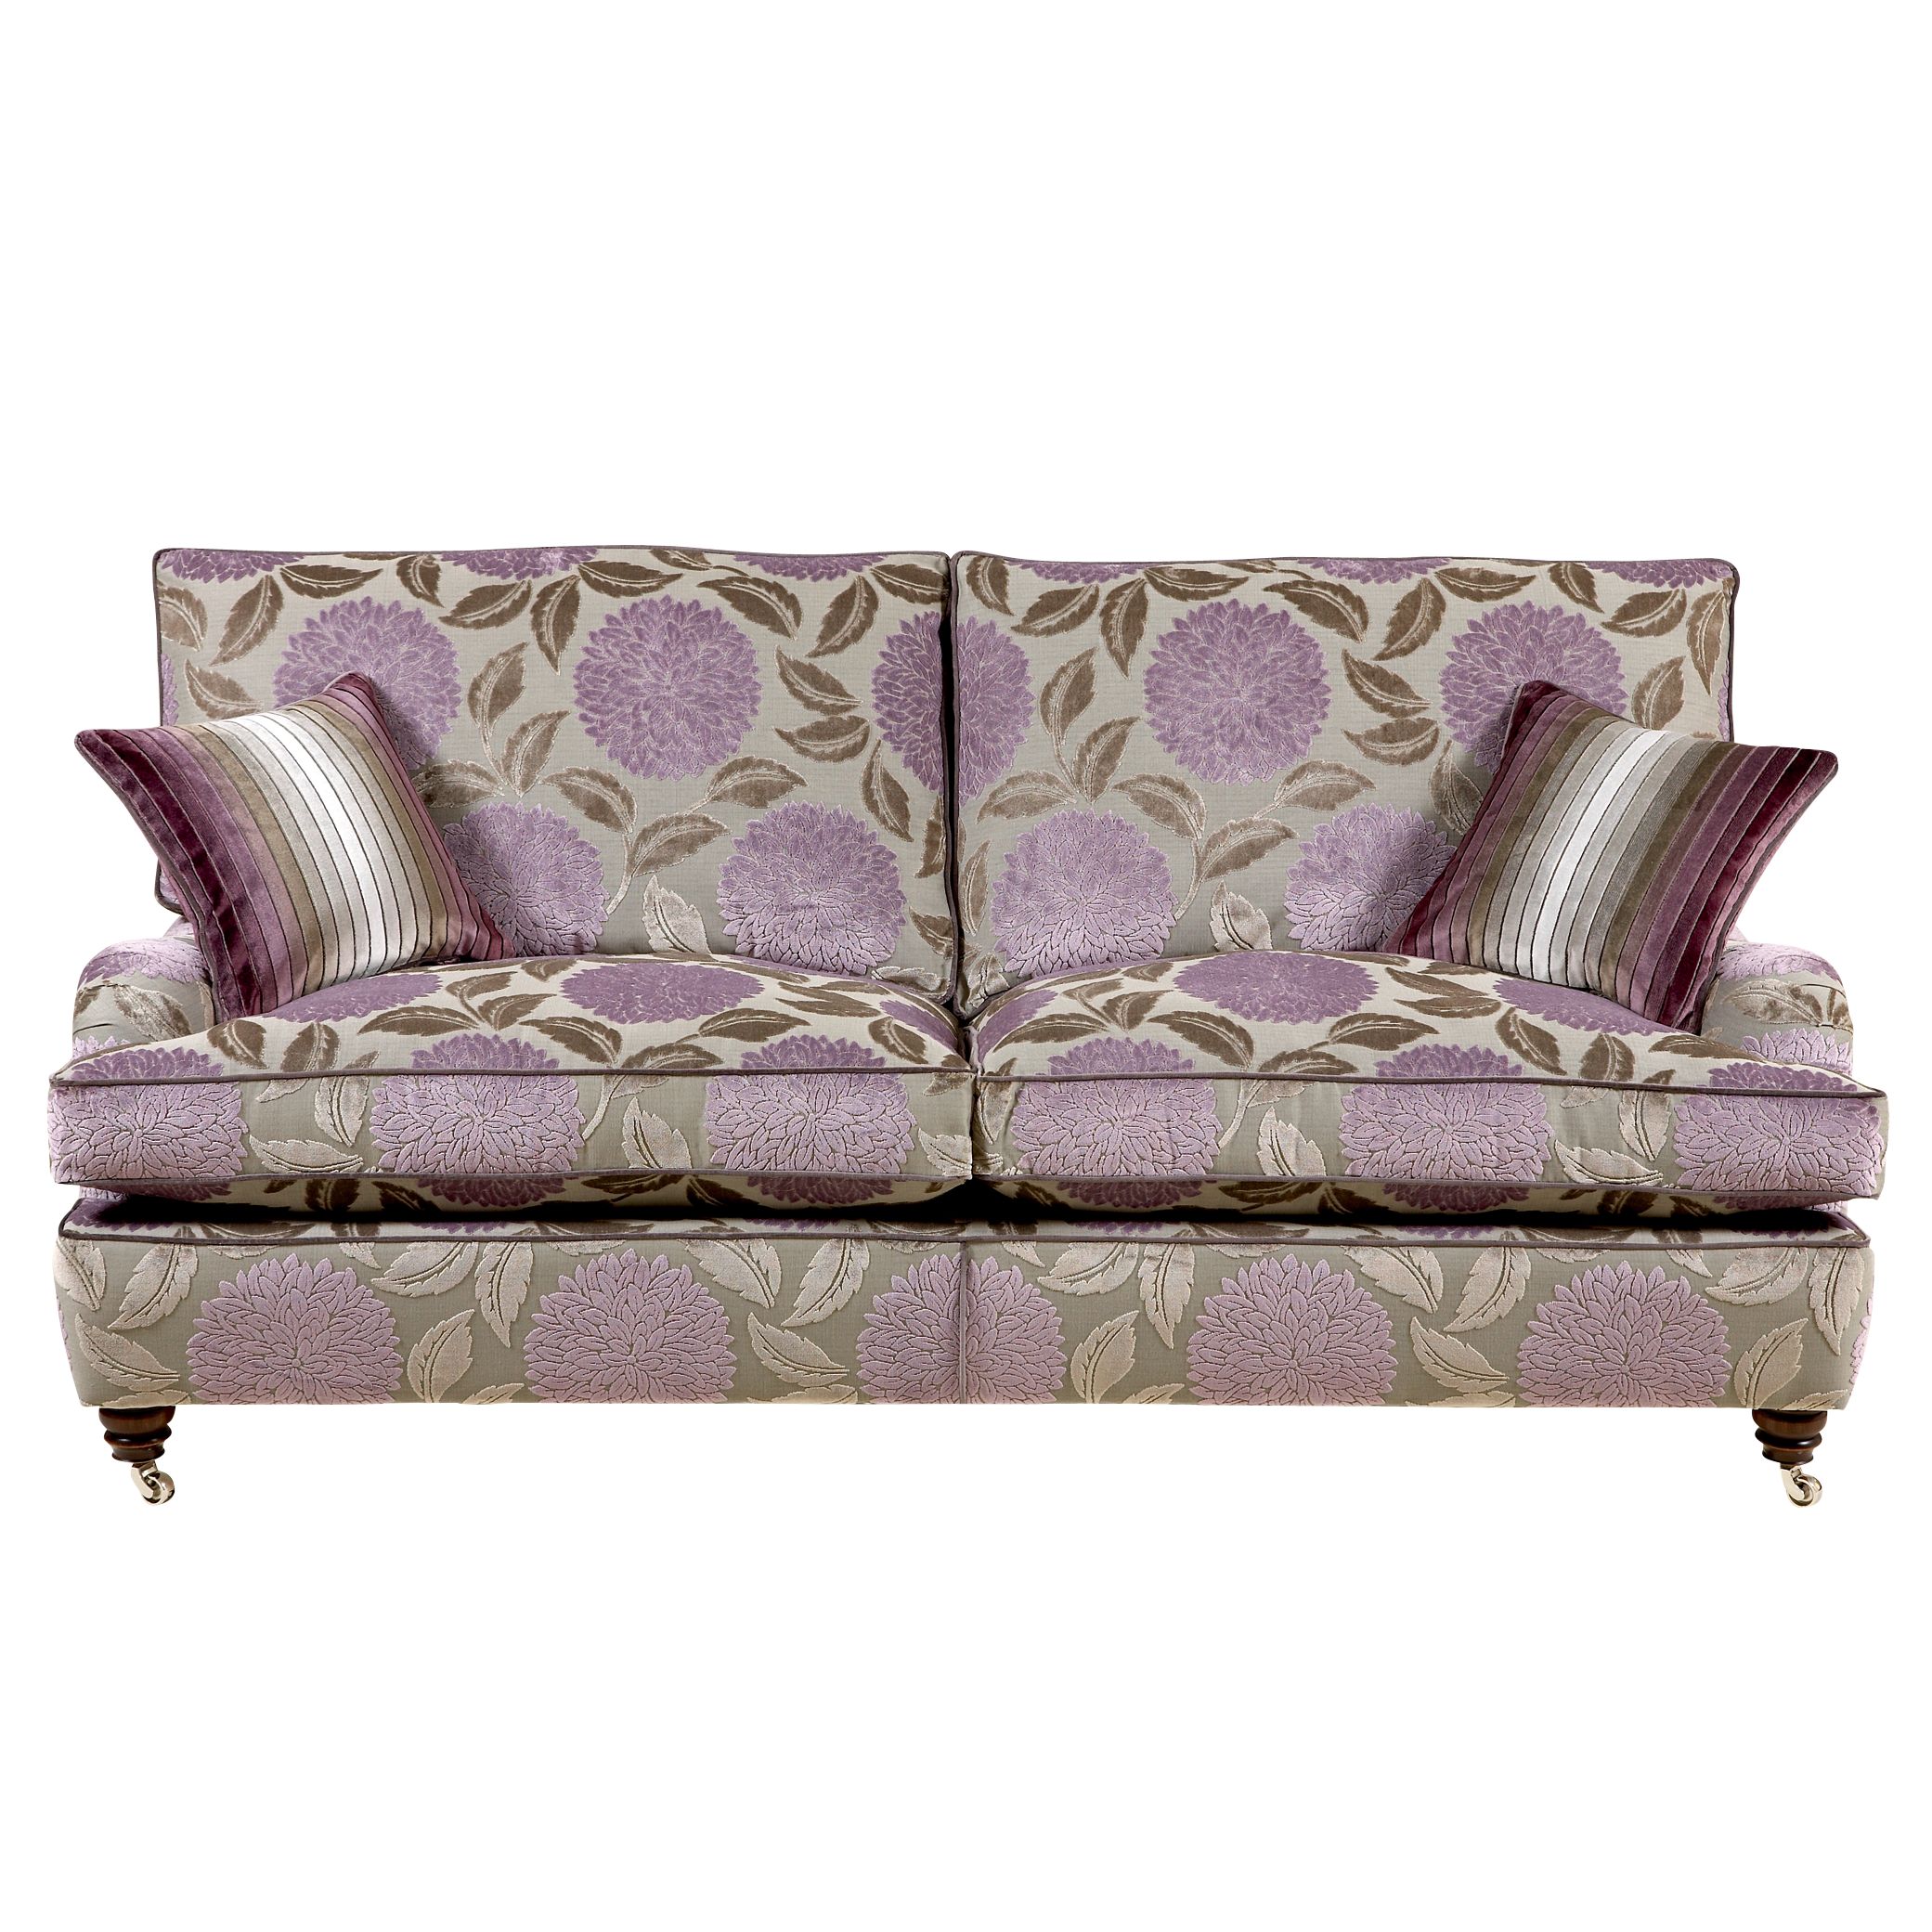 Duresta Walcot Large Sofa, Claverton Silver/Lilac at John Lewis